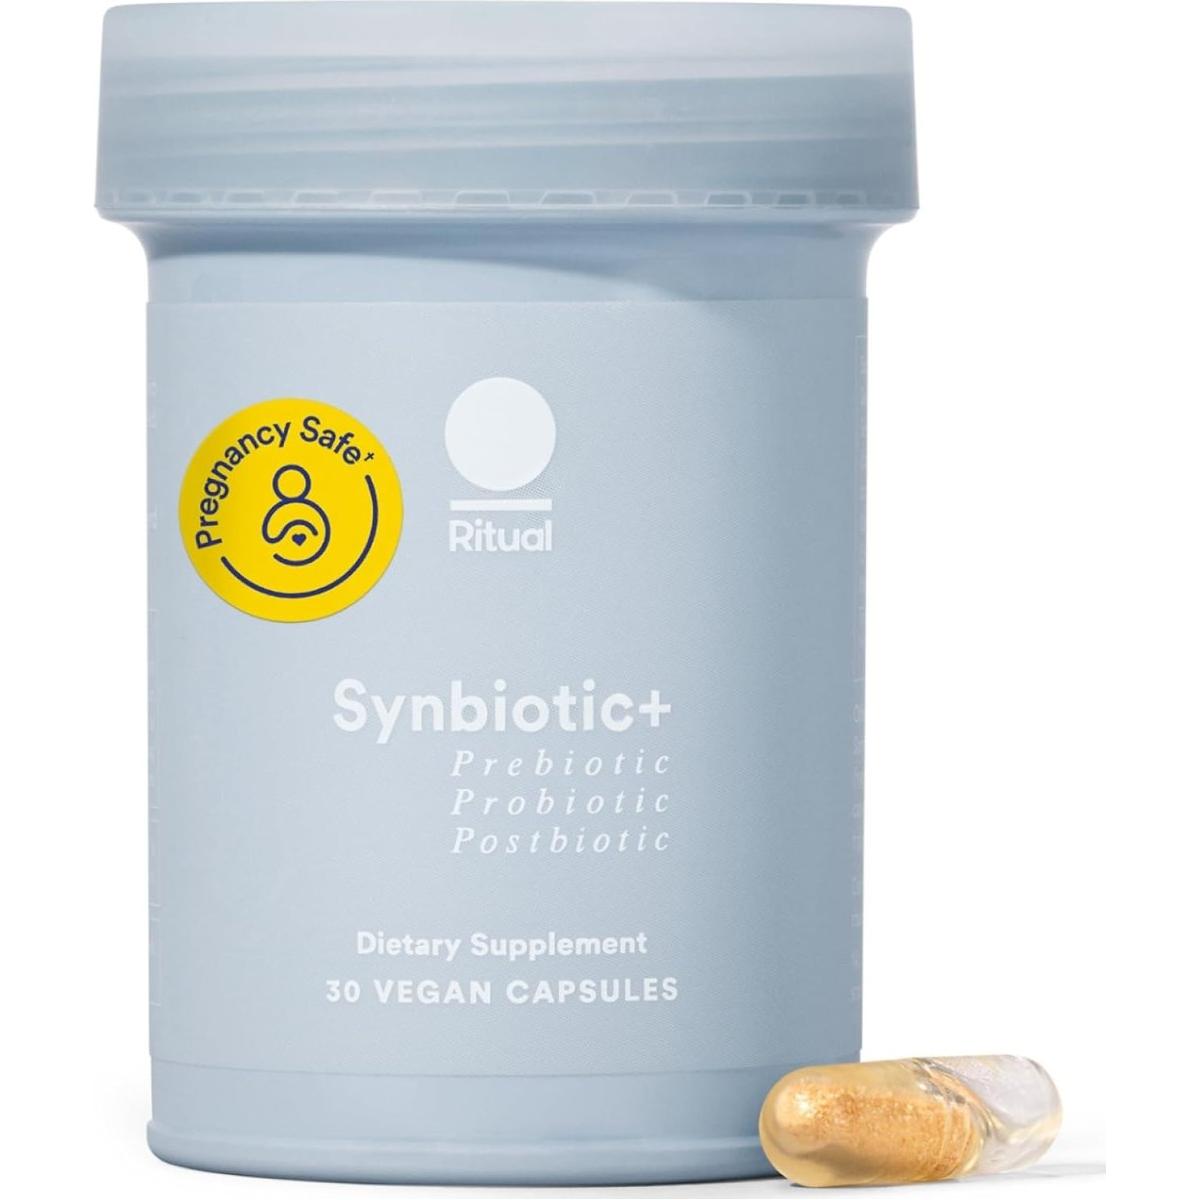 Ritual Synbiotic+ : Probiotic, Prebiotic, Postbiotic, 3 - In - 1 Formula - 30 Vegan Capsules - Glam Global UK